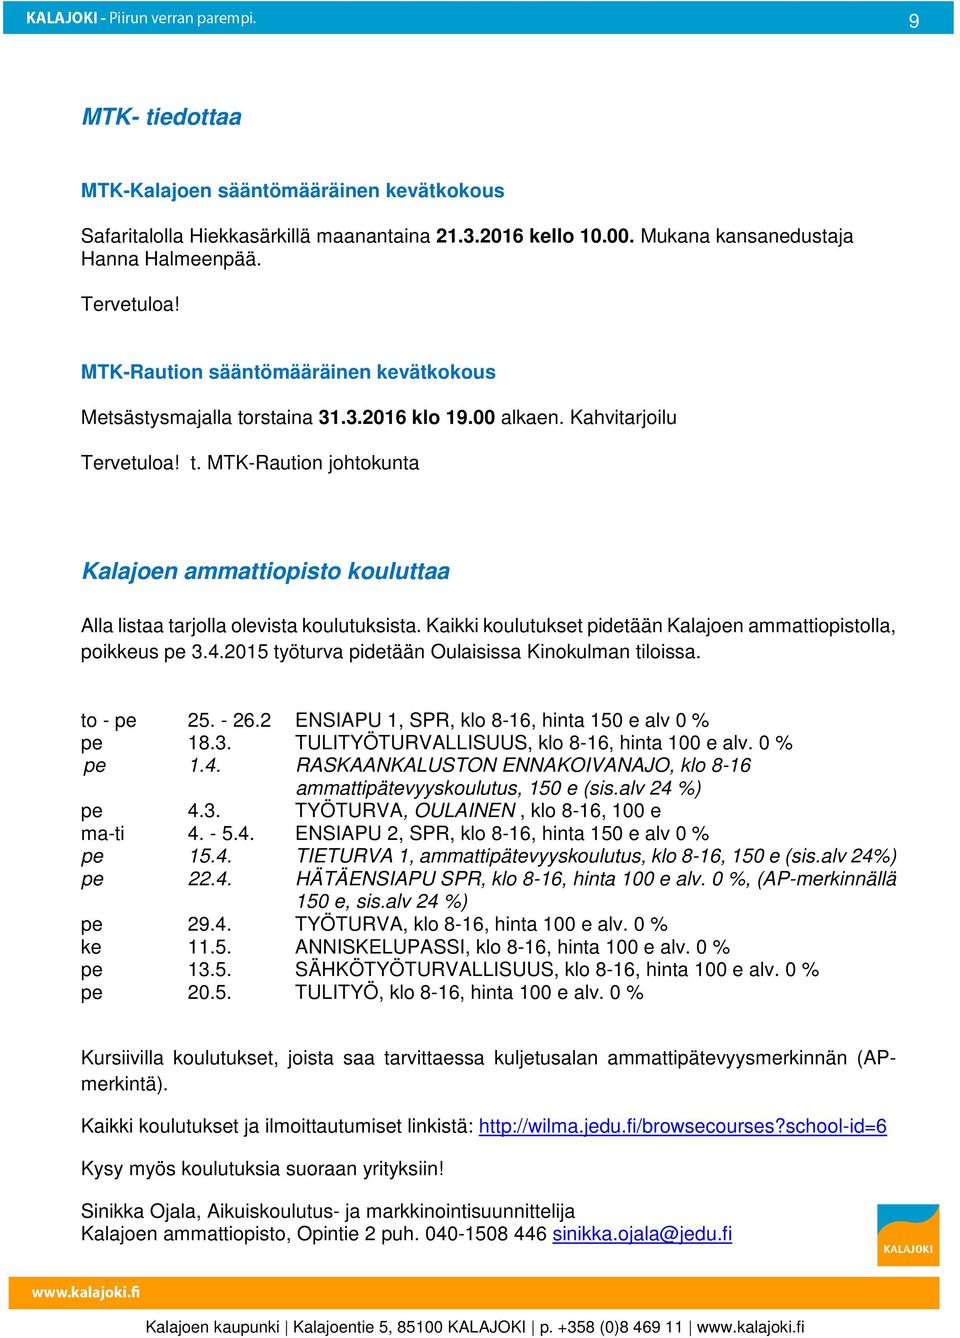 Kaikki koulutukset pidetään Kalajoen ammattiopistolla, poikkeus pe 3.4.2015 työturva pidetään Oulaisissa Kinokulman tiloissa. to - pe 25. - 26.2 ENSIAPU 1, SPR, klo 8-16, hinta 150 e alv 0 % pe 18.3. TULITYÖTURVALLISUUS, klo 8-16, hinta 100 e alv.